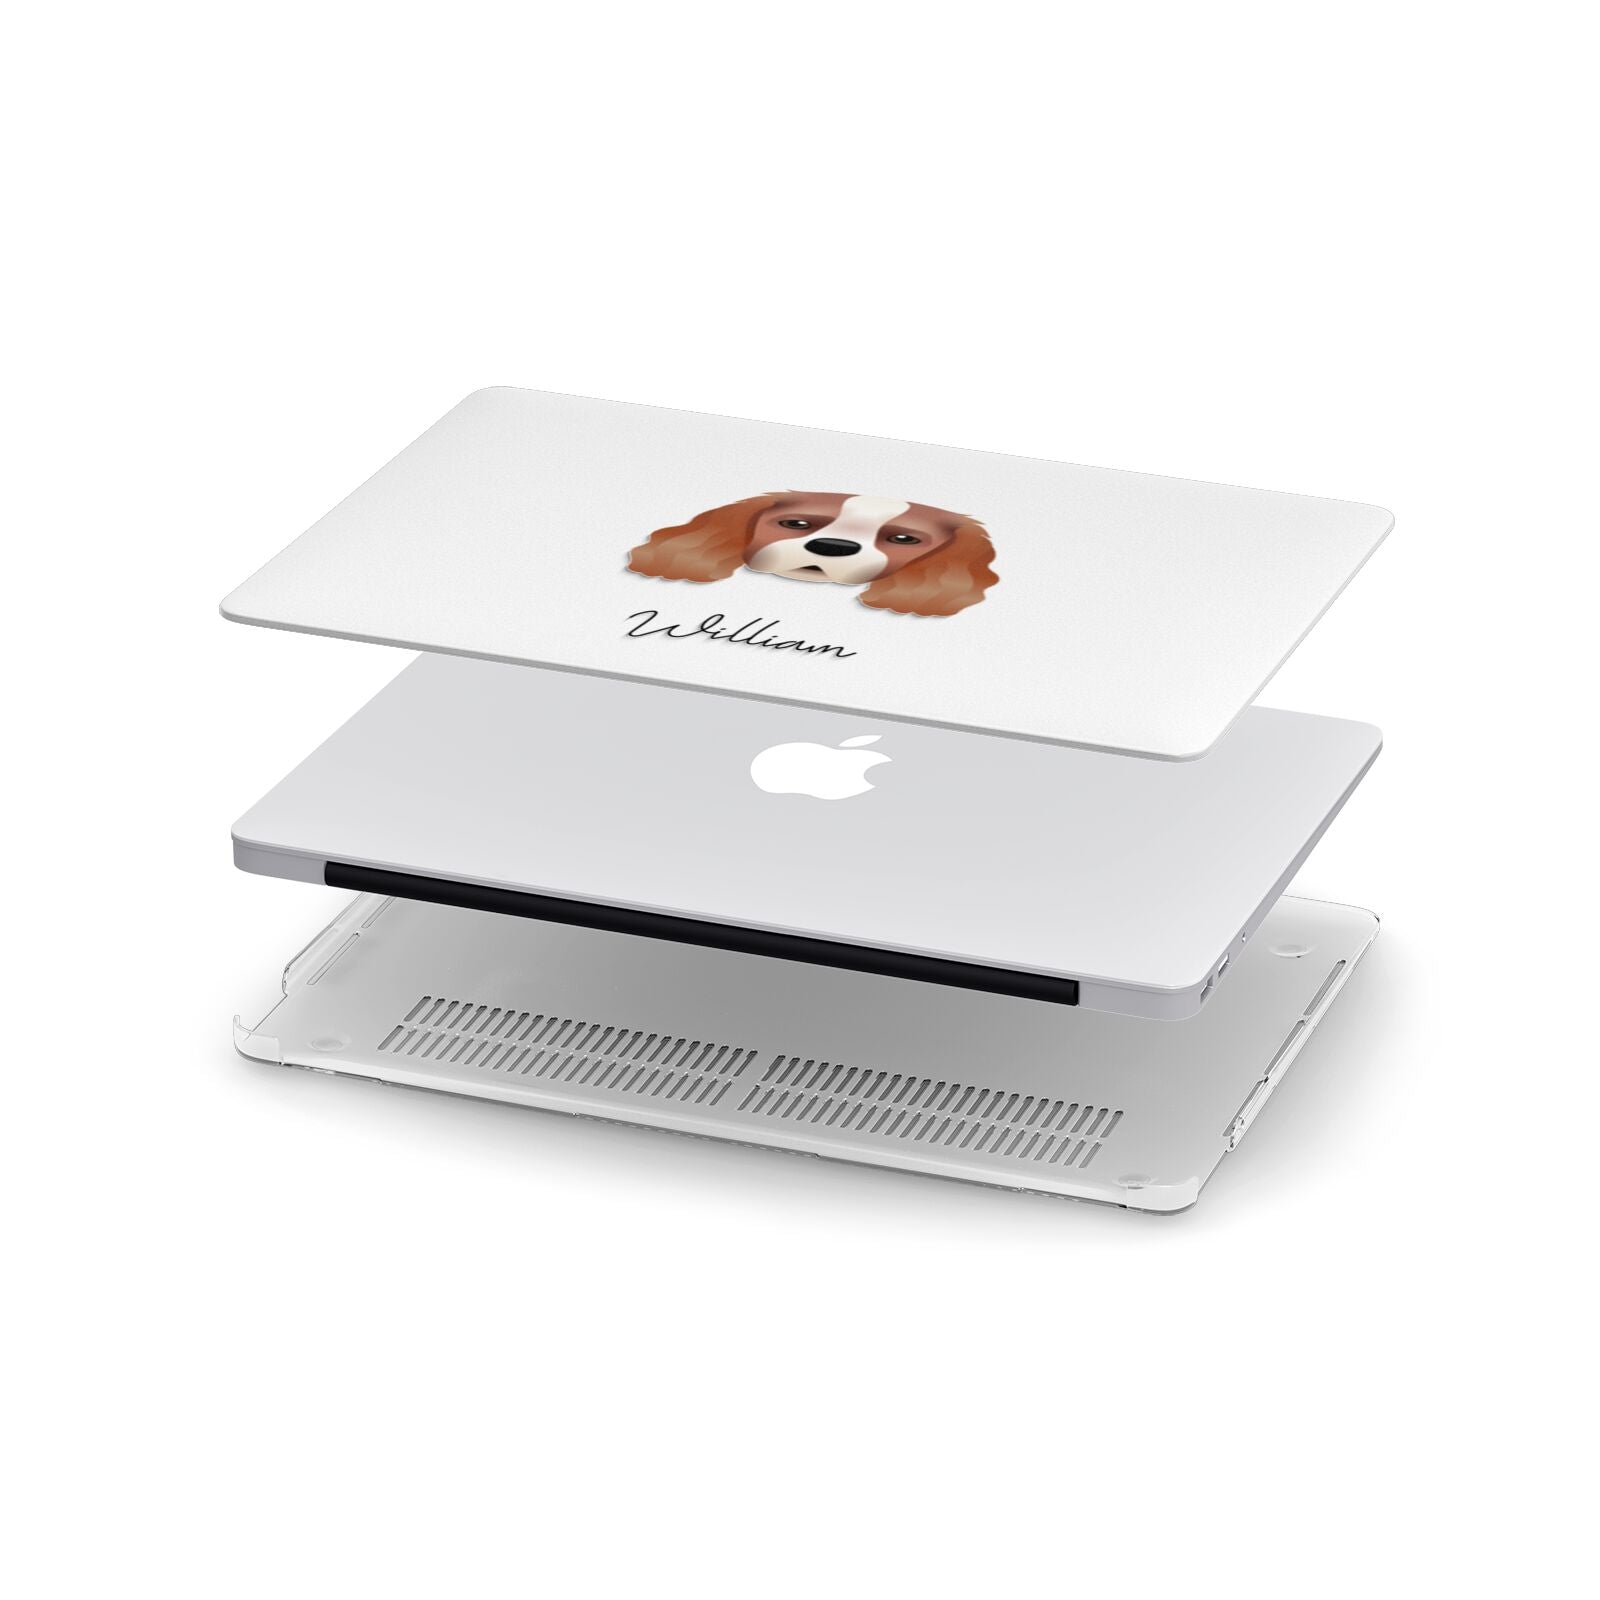 King Charles Spaniel Personalised Apple MacBook Case in Detail